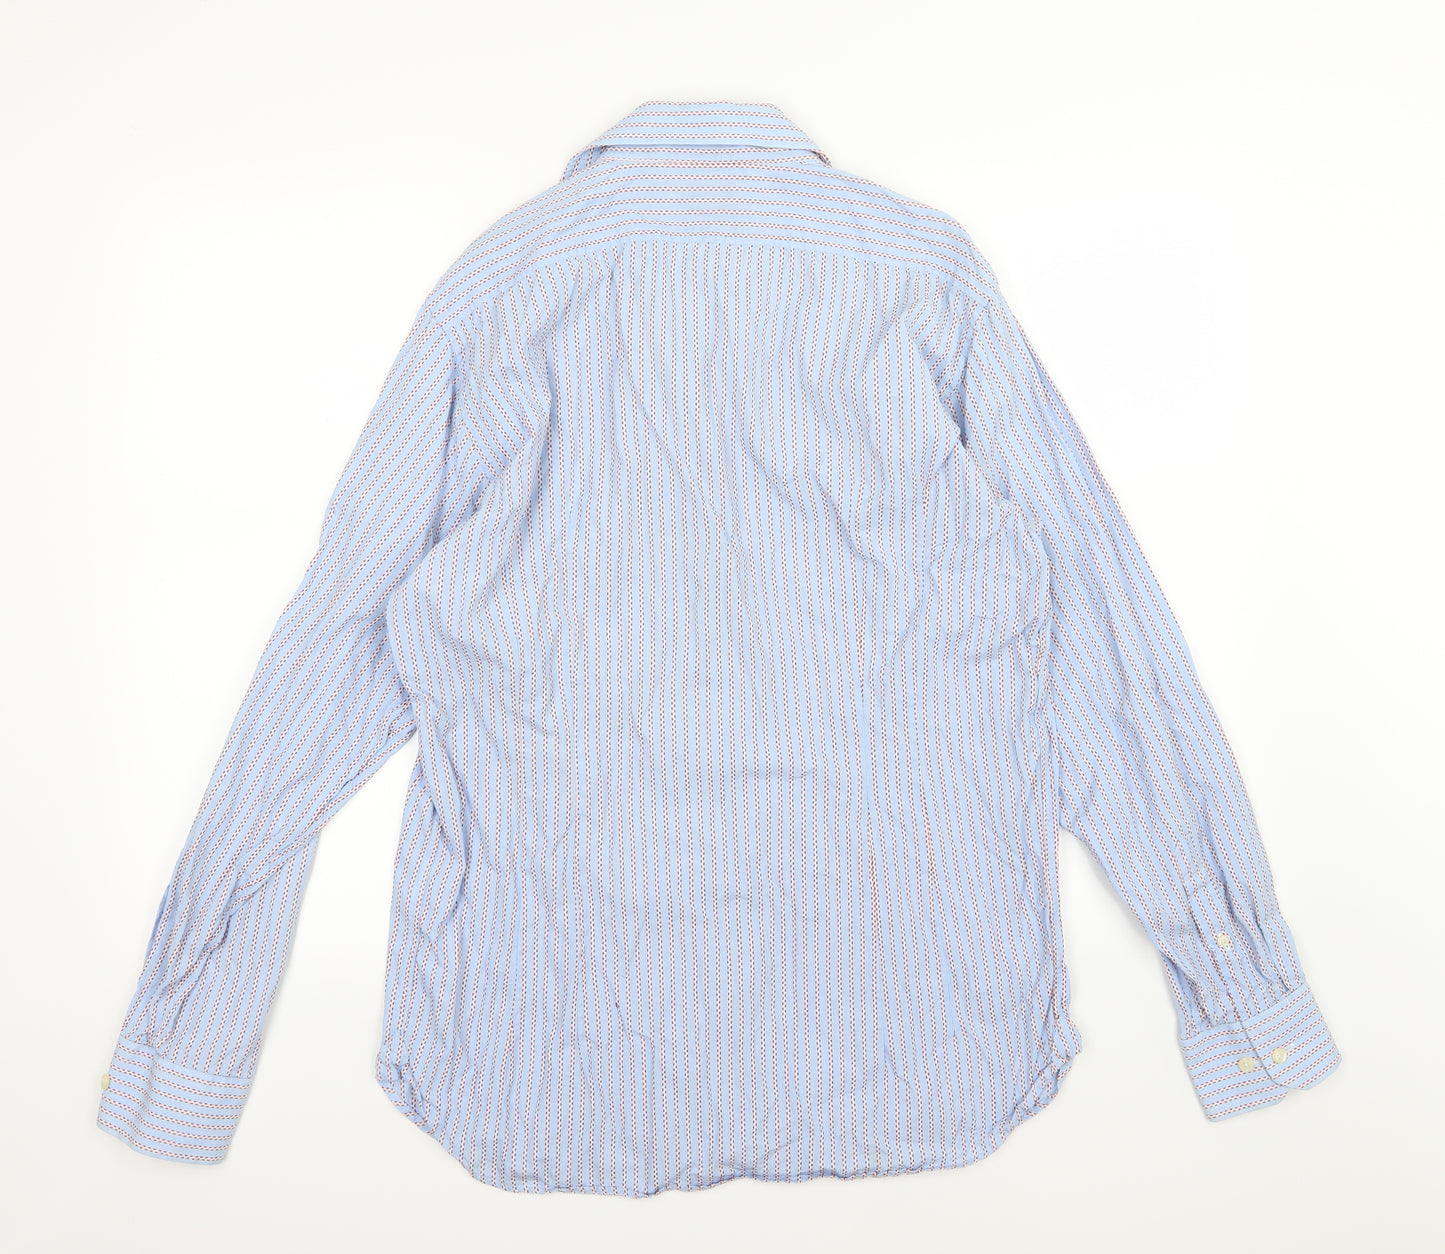 Duffer Bros Mens Blue Striped Woven  Dress Shirt Size 16.5